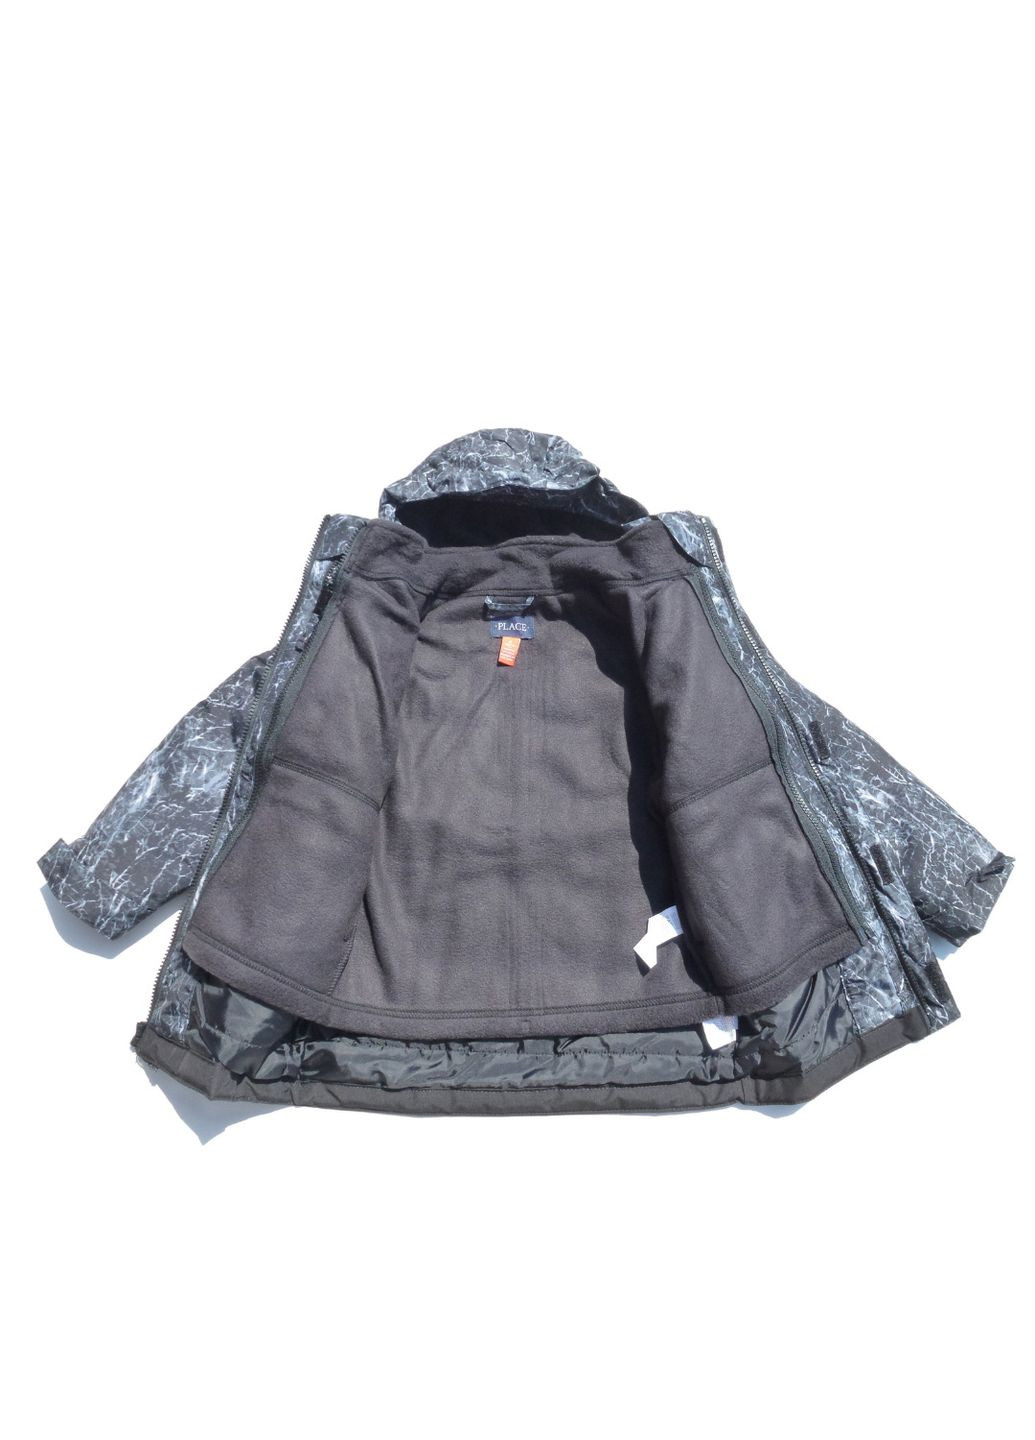 Комбінована зимня куртка зимова дитяча (демі+флісова вітровка) 3 в 1, 98-104 см, 3-4 р The Children's Place